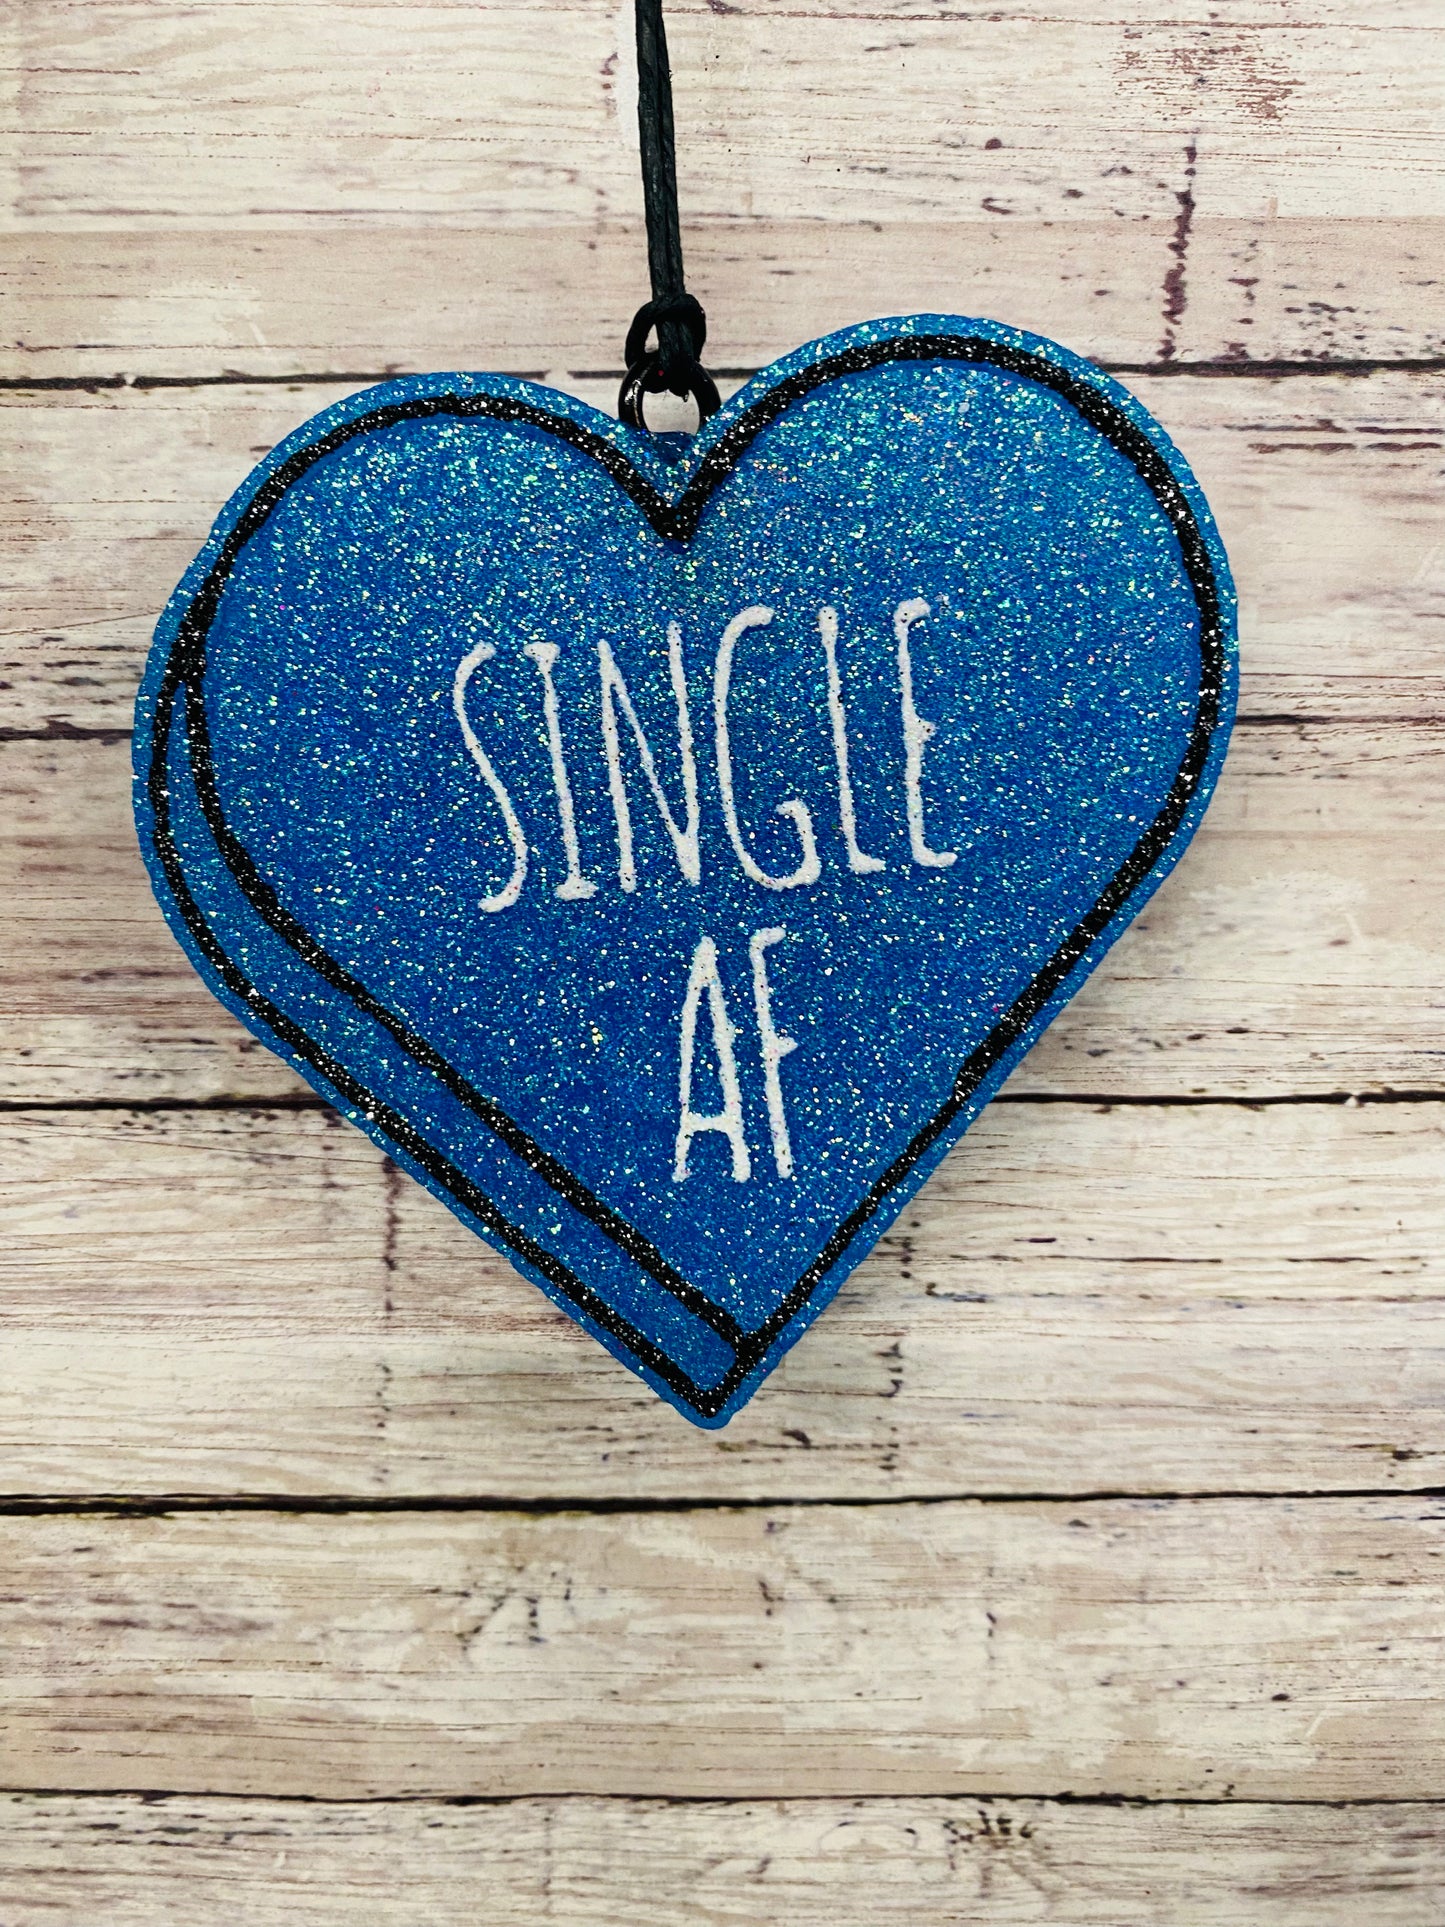 Single AF Heart